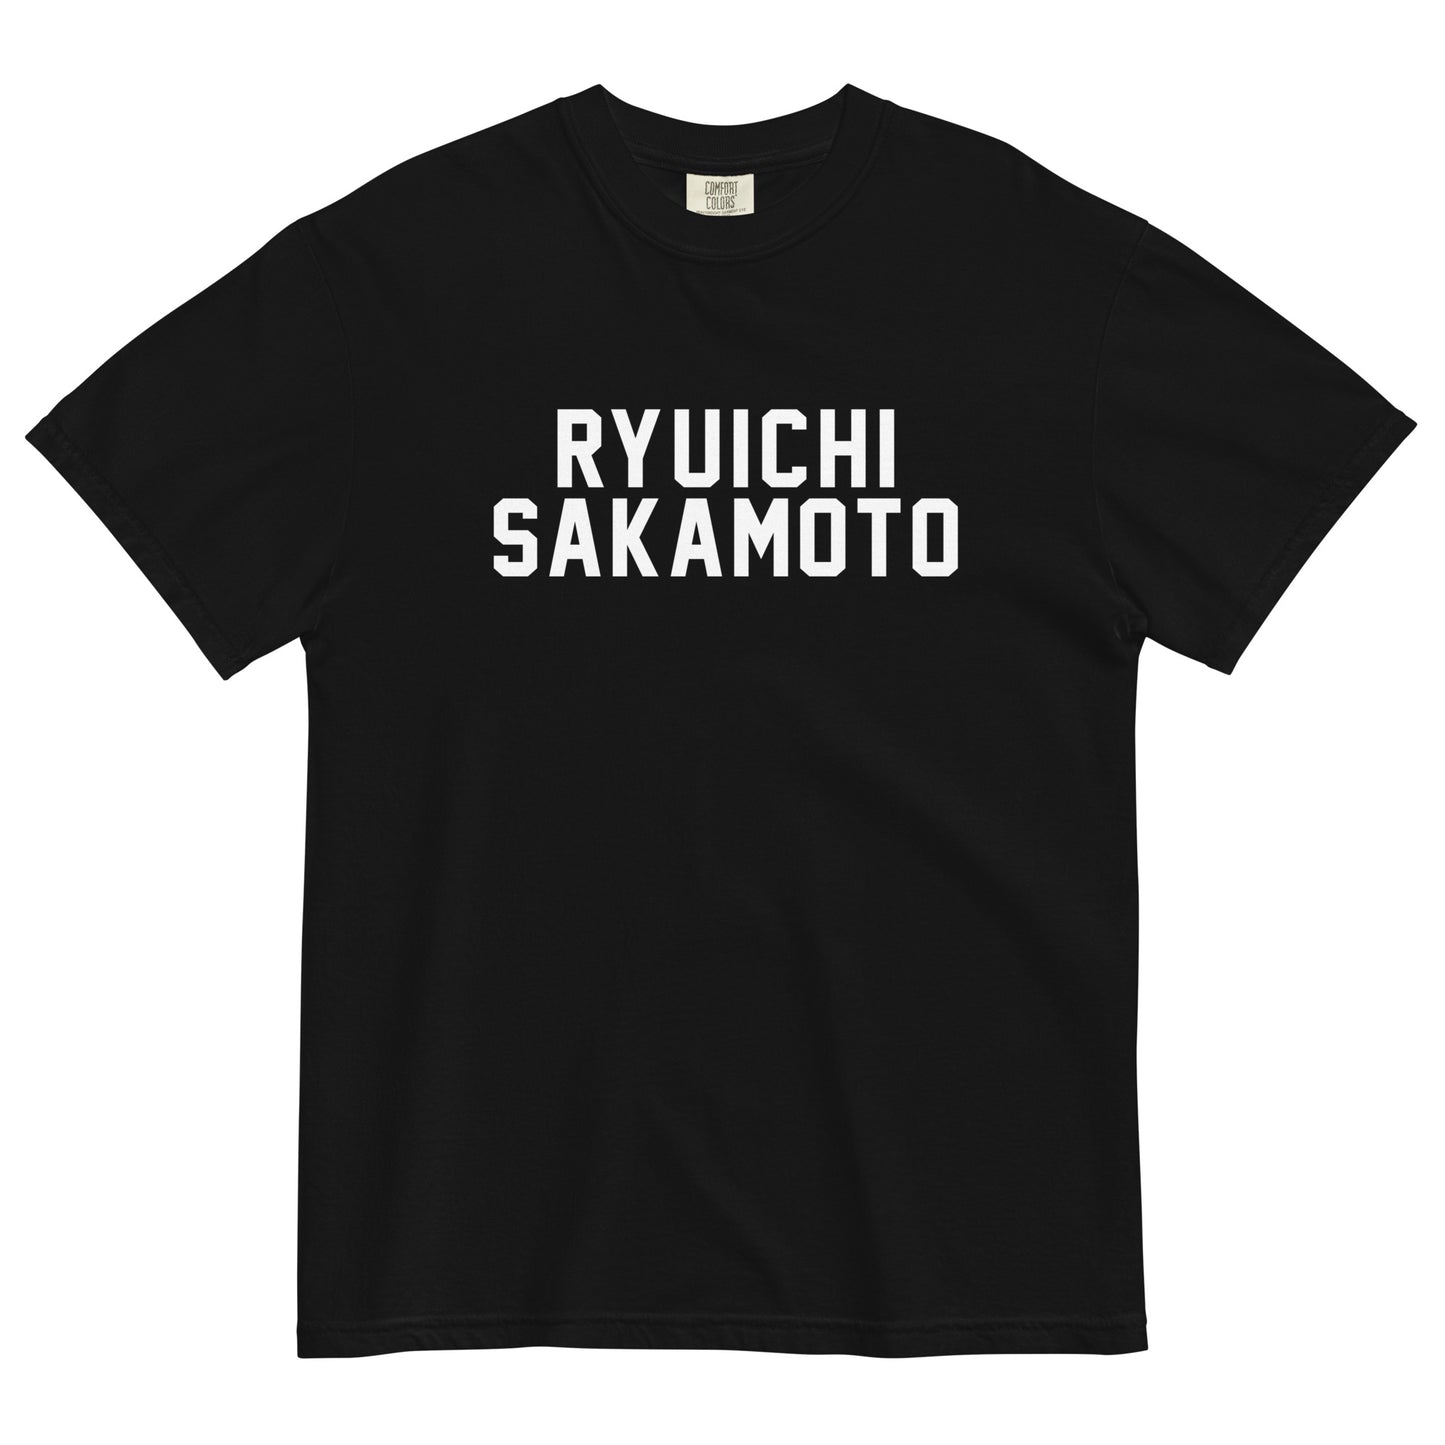 RYUICHI SAKAMOTO